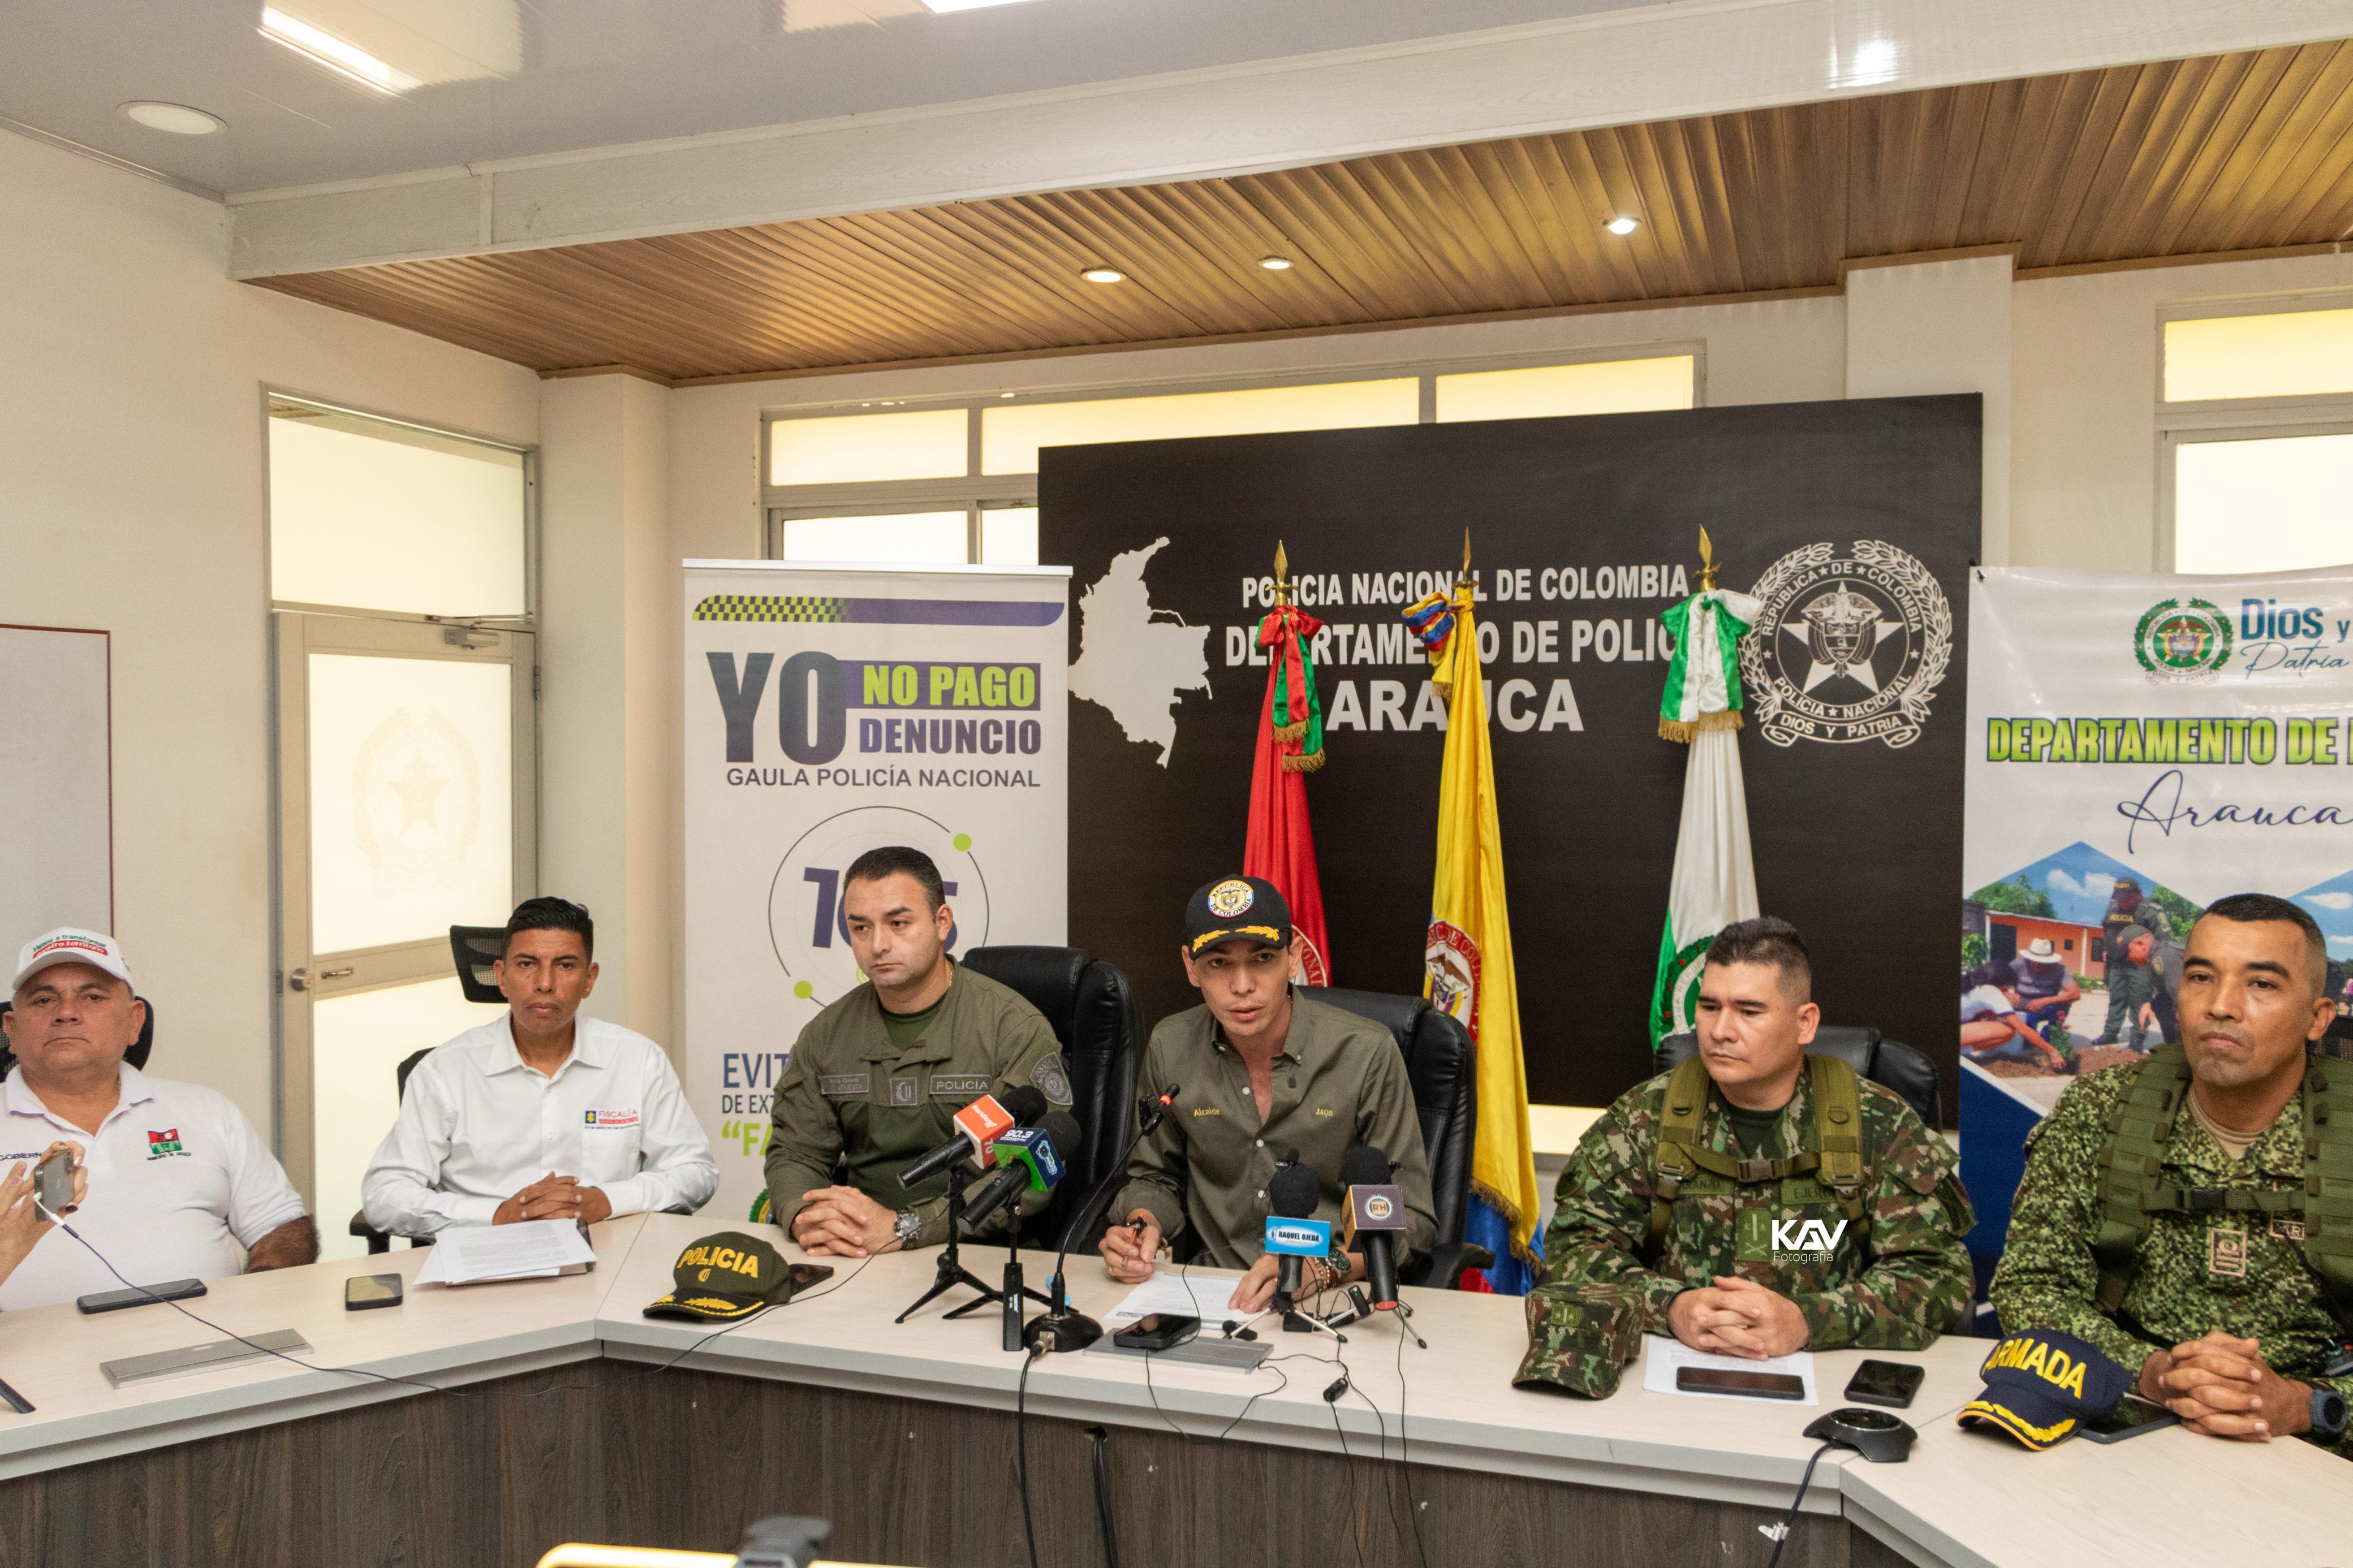 El alcalde Juan Qüenza y las Fuerzas Militares dieron a conocer la situación en materia de seguridad del municipio de Arauca